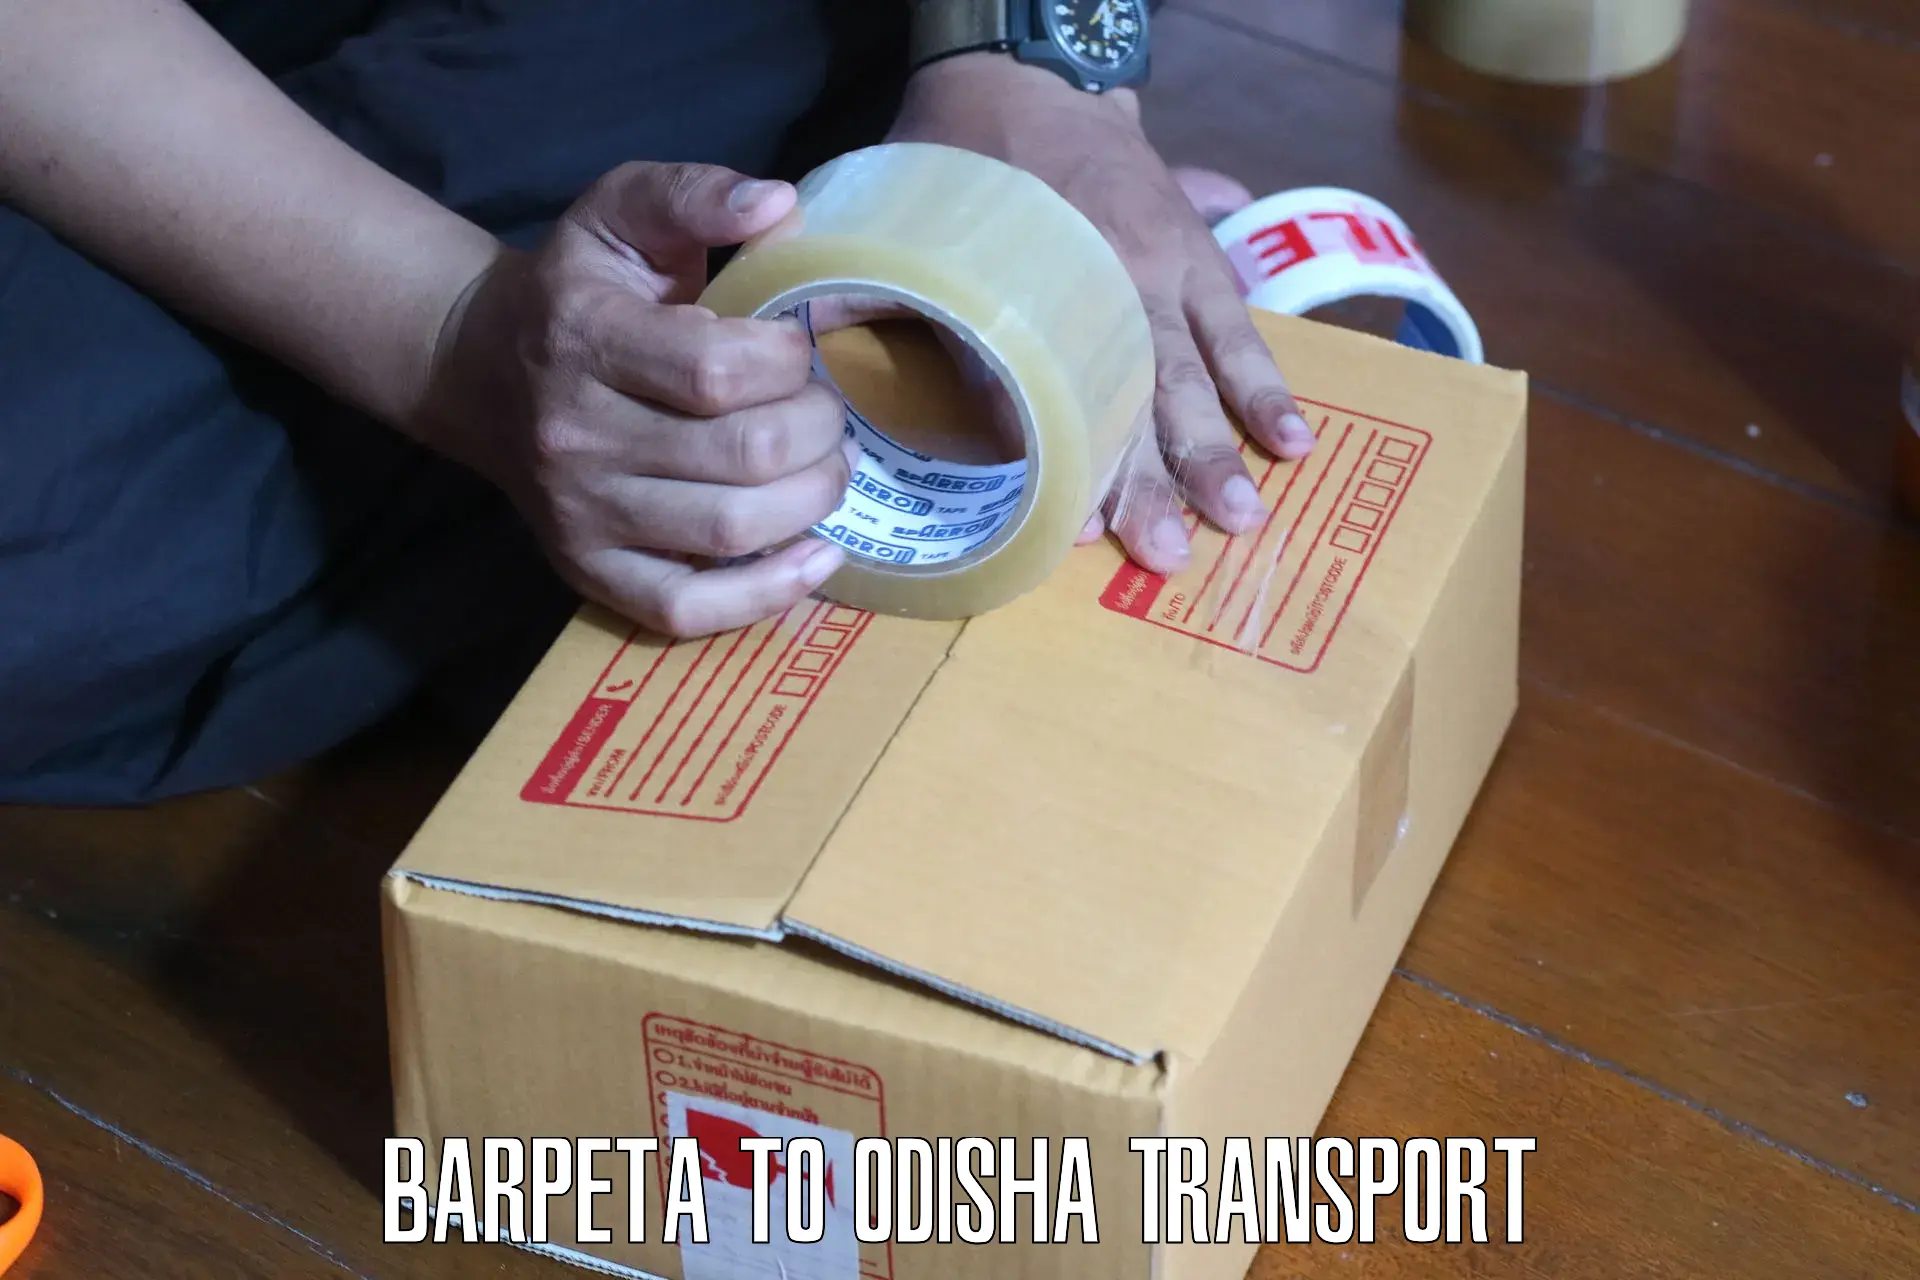 Furniture transport service Barpeta to Polasara